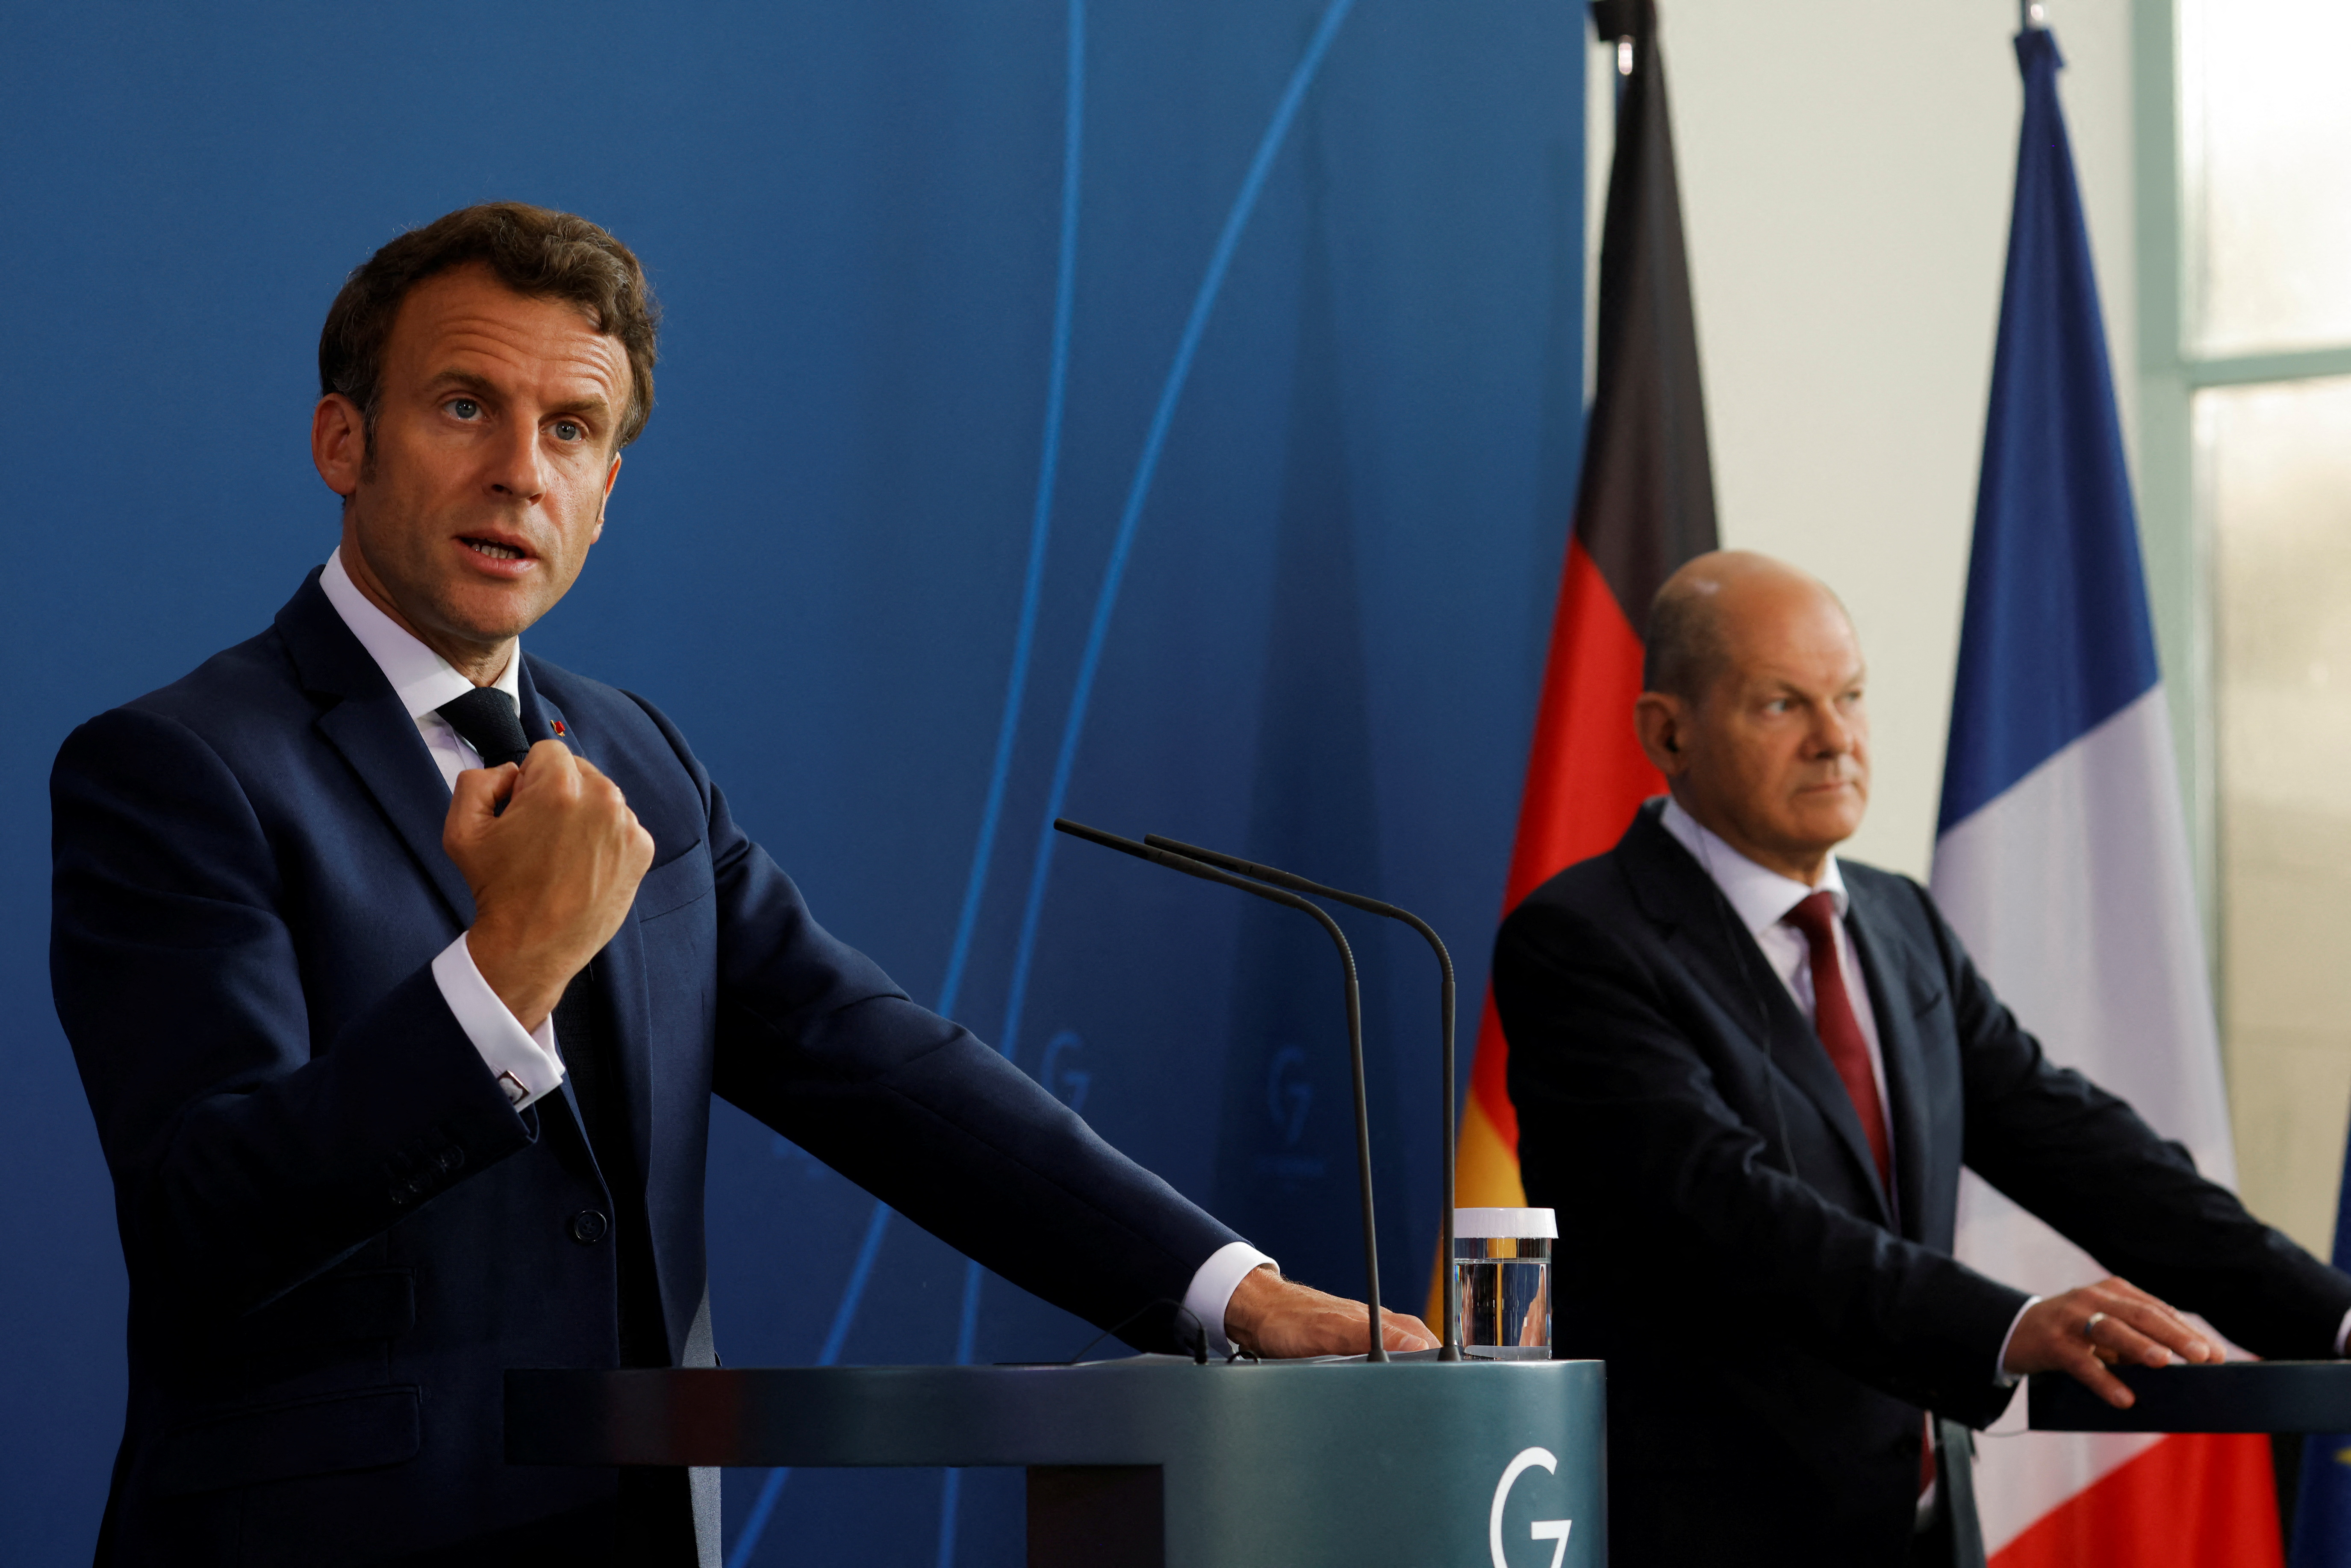 El canciller de Alemania, Olaf Scholz, y el presidente de Francia, Emmanuel Macron, asisten a una rueda de prensa en la Cancillería en Berlín, Alemania, el 9 de mayo de 2022.  REUTERS/Michele Tantussi